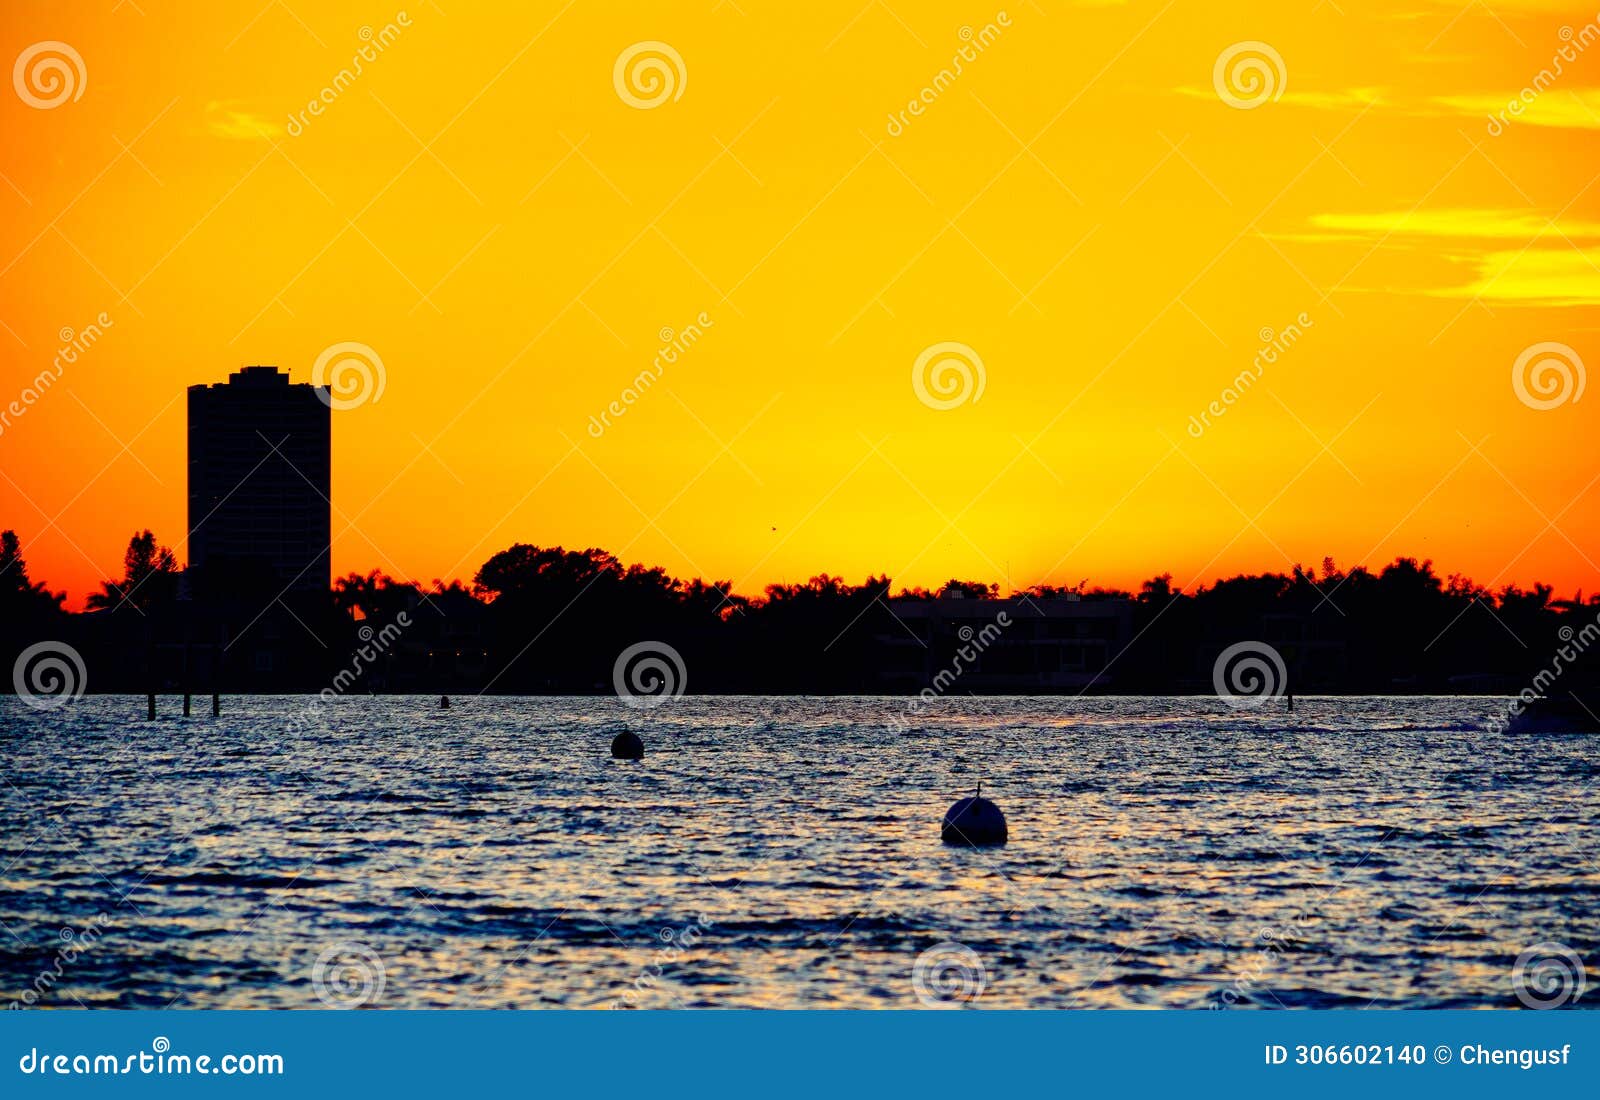 sarasota bay harbor and bay front sun set landscape